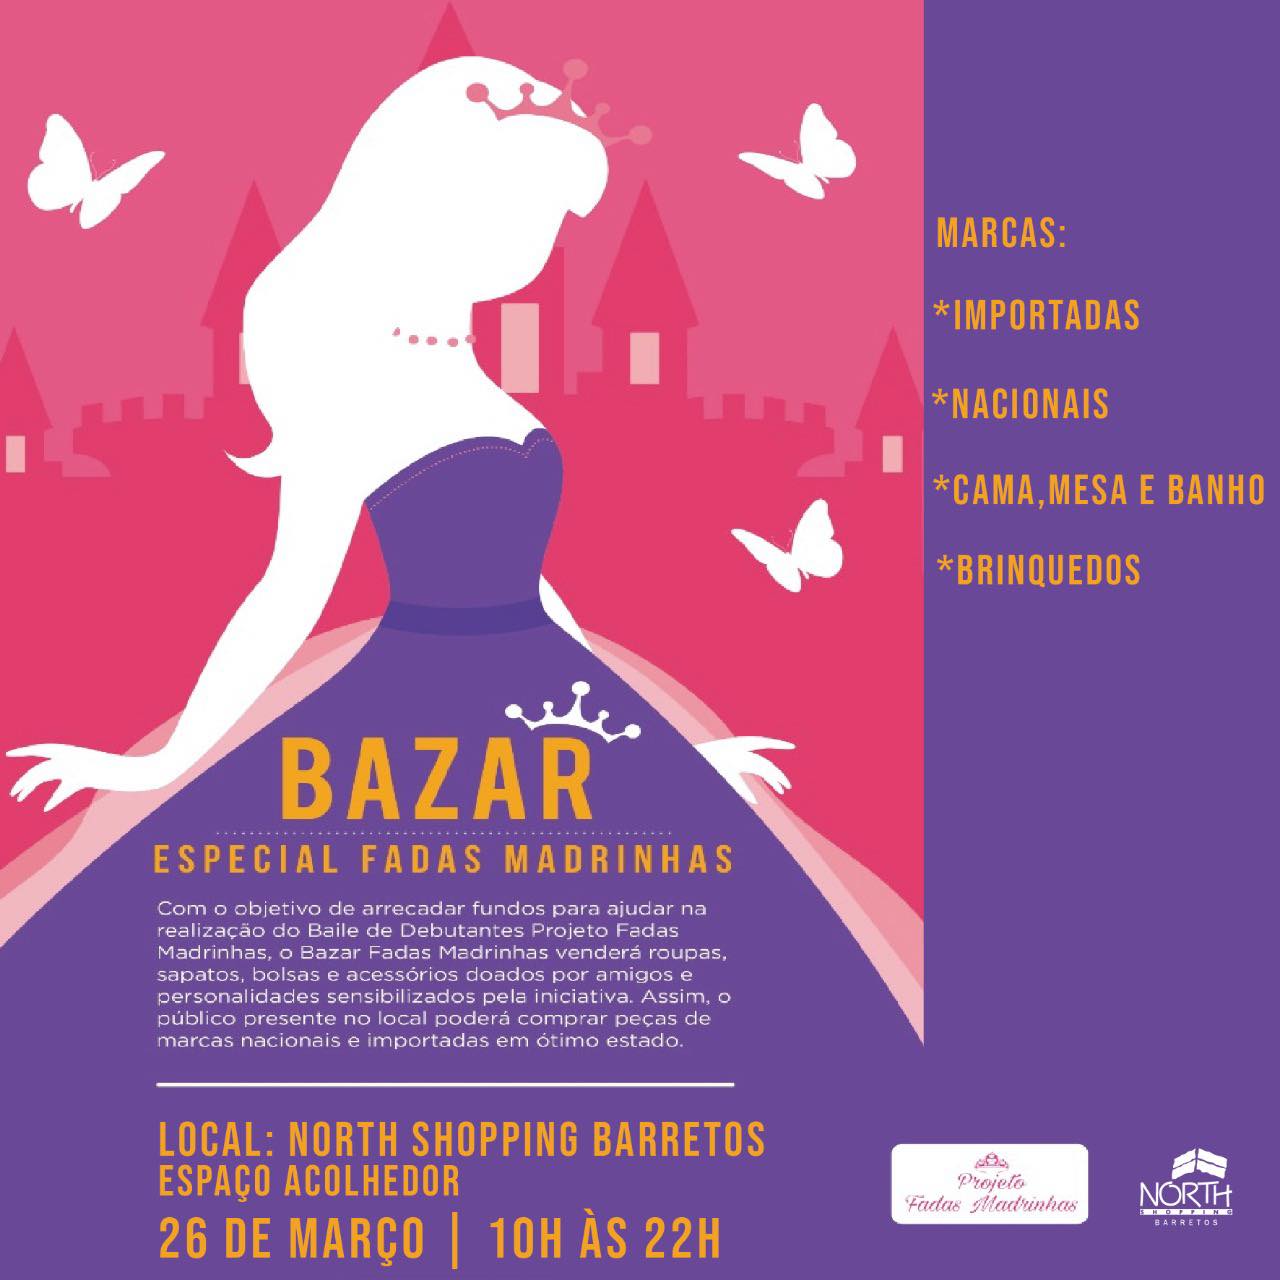 Projeto Fadas Madrinhas realiza Bazar Solidário no North Shopping Barretos